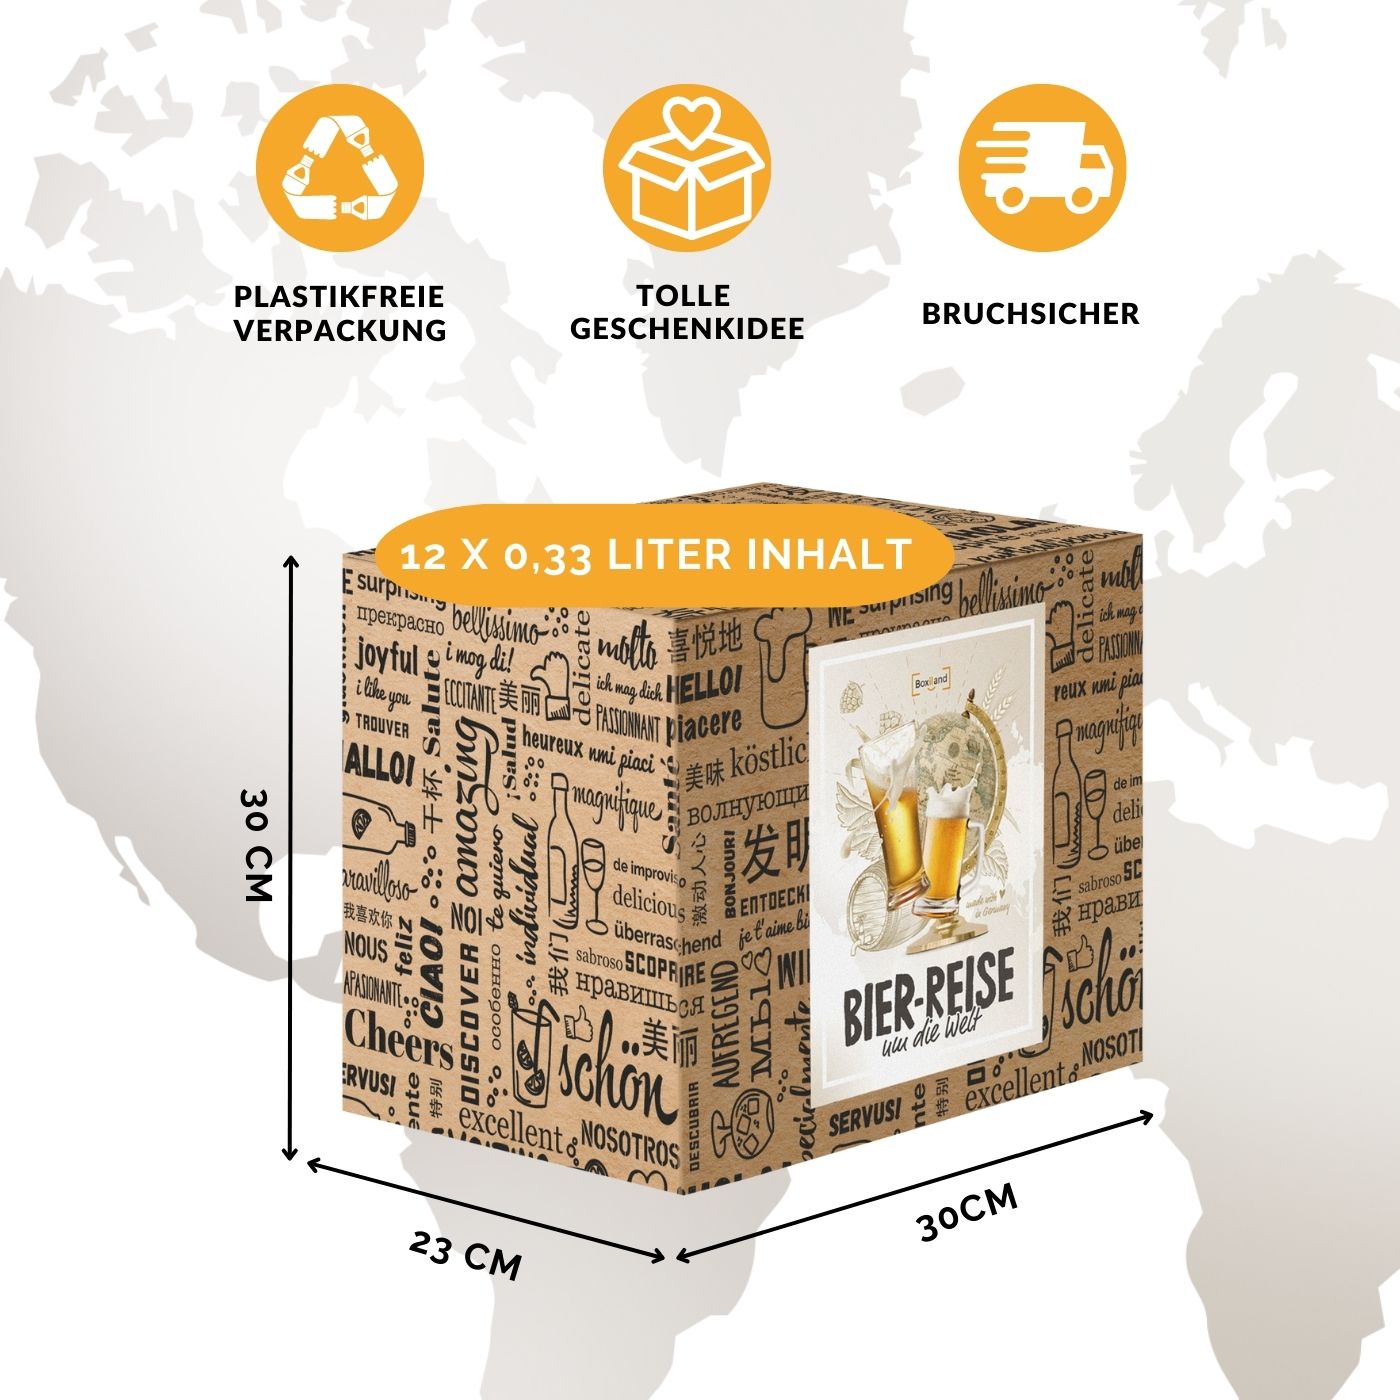 Biere der Welt (12 Flaschen) internationale Bier Spezialitäten zum Verschenken - Beste Biere der Welt mit Geschenkkarton (Bier + Tasting-Anleitung + Bierbroschüre + Brauereigeschenke + Geschenkkarton)